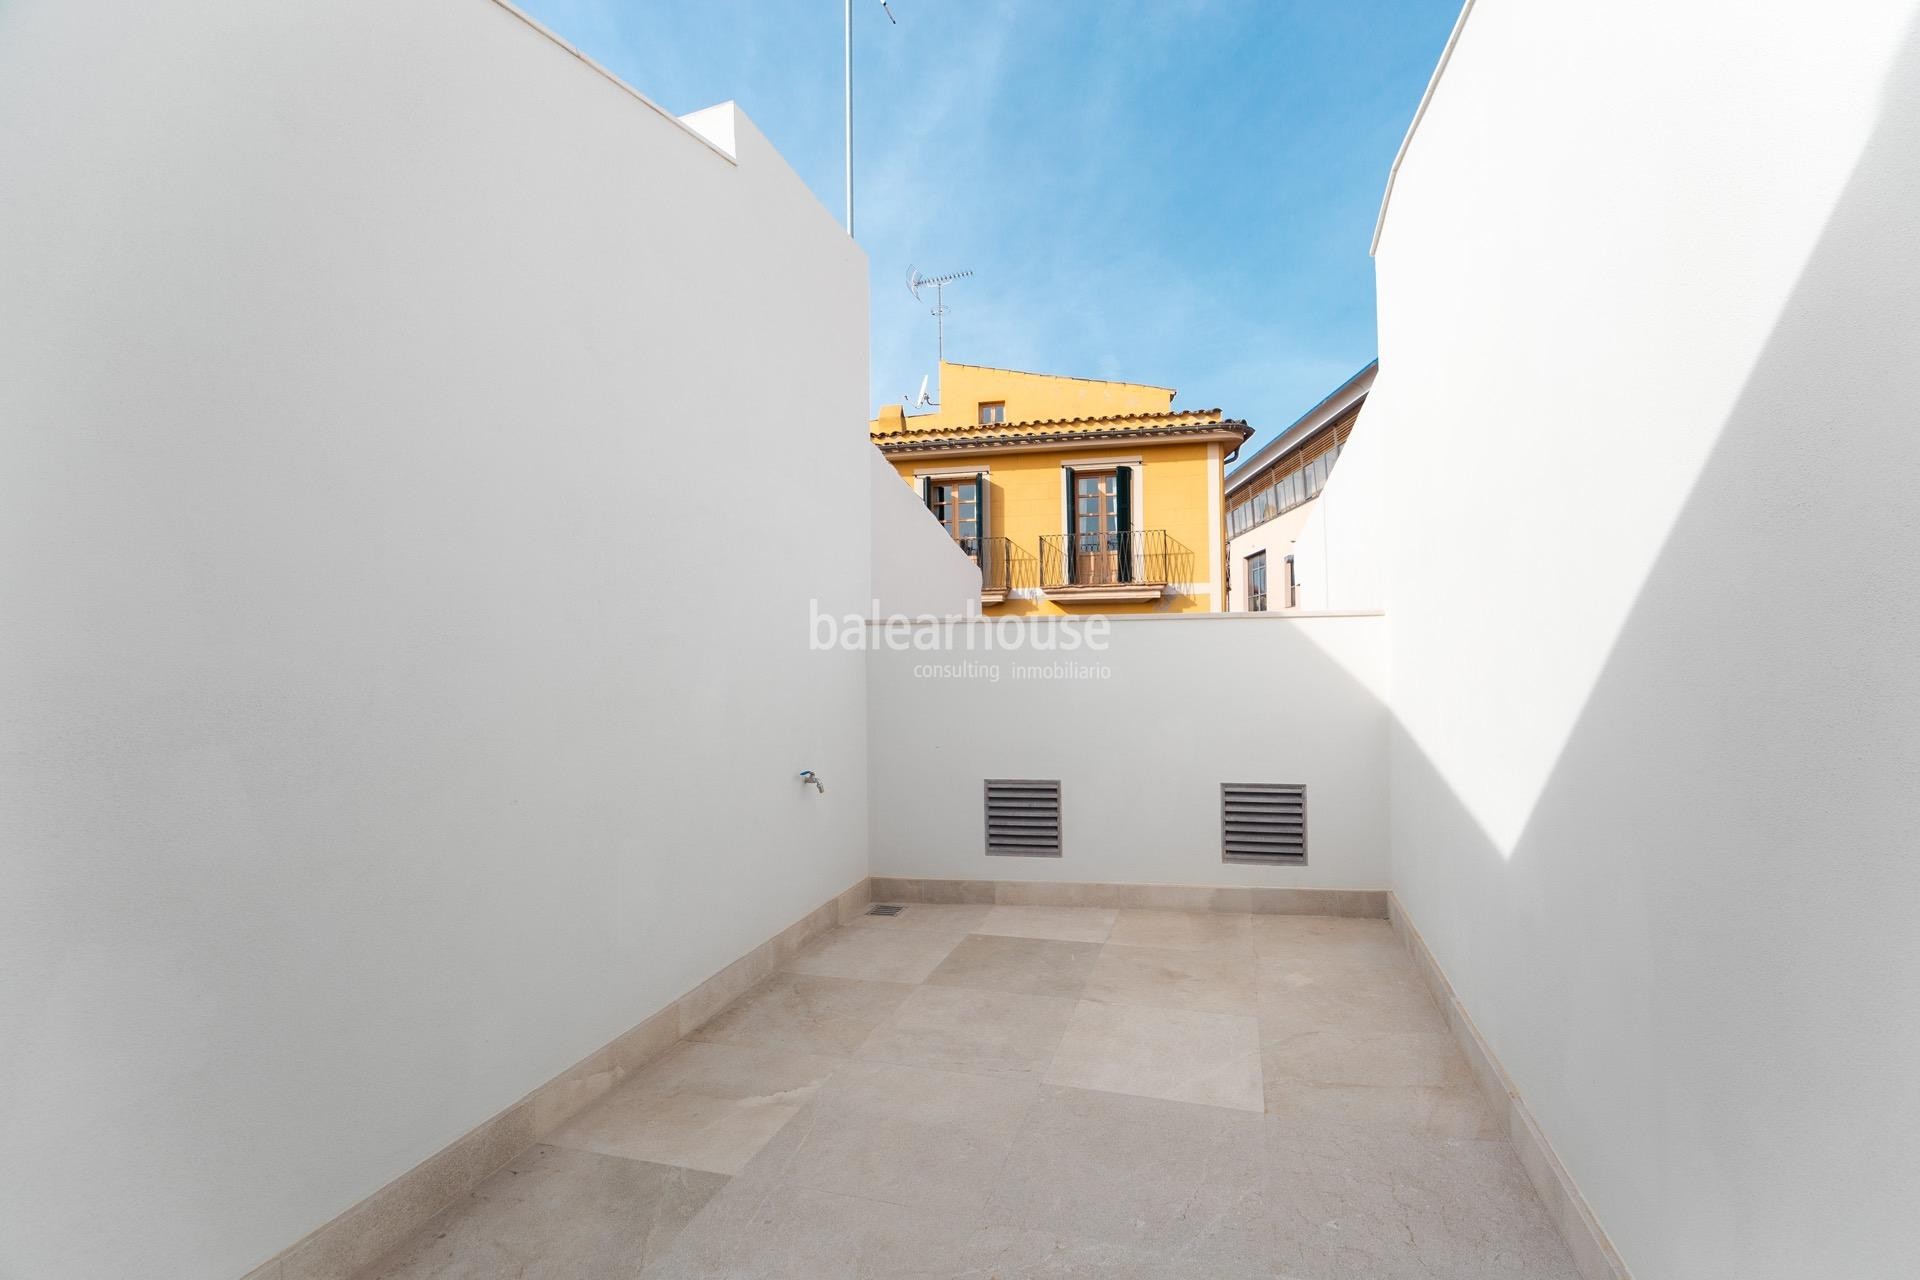 Exclusividad,diseño y tradición en esta magnífica casa nueva ubicada en el centro histórico de Palma